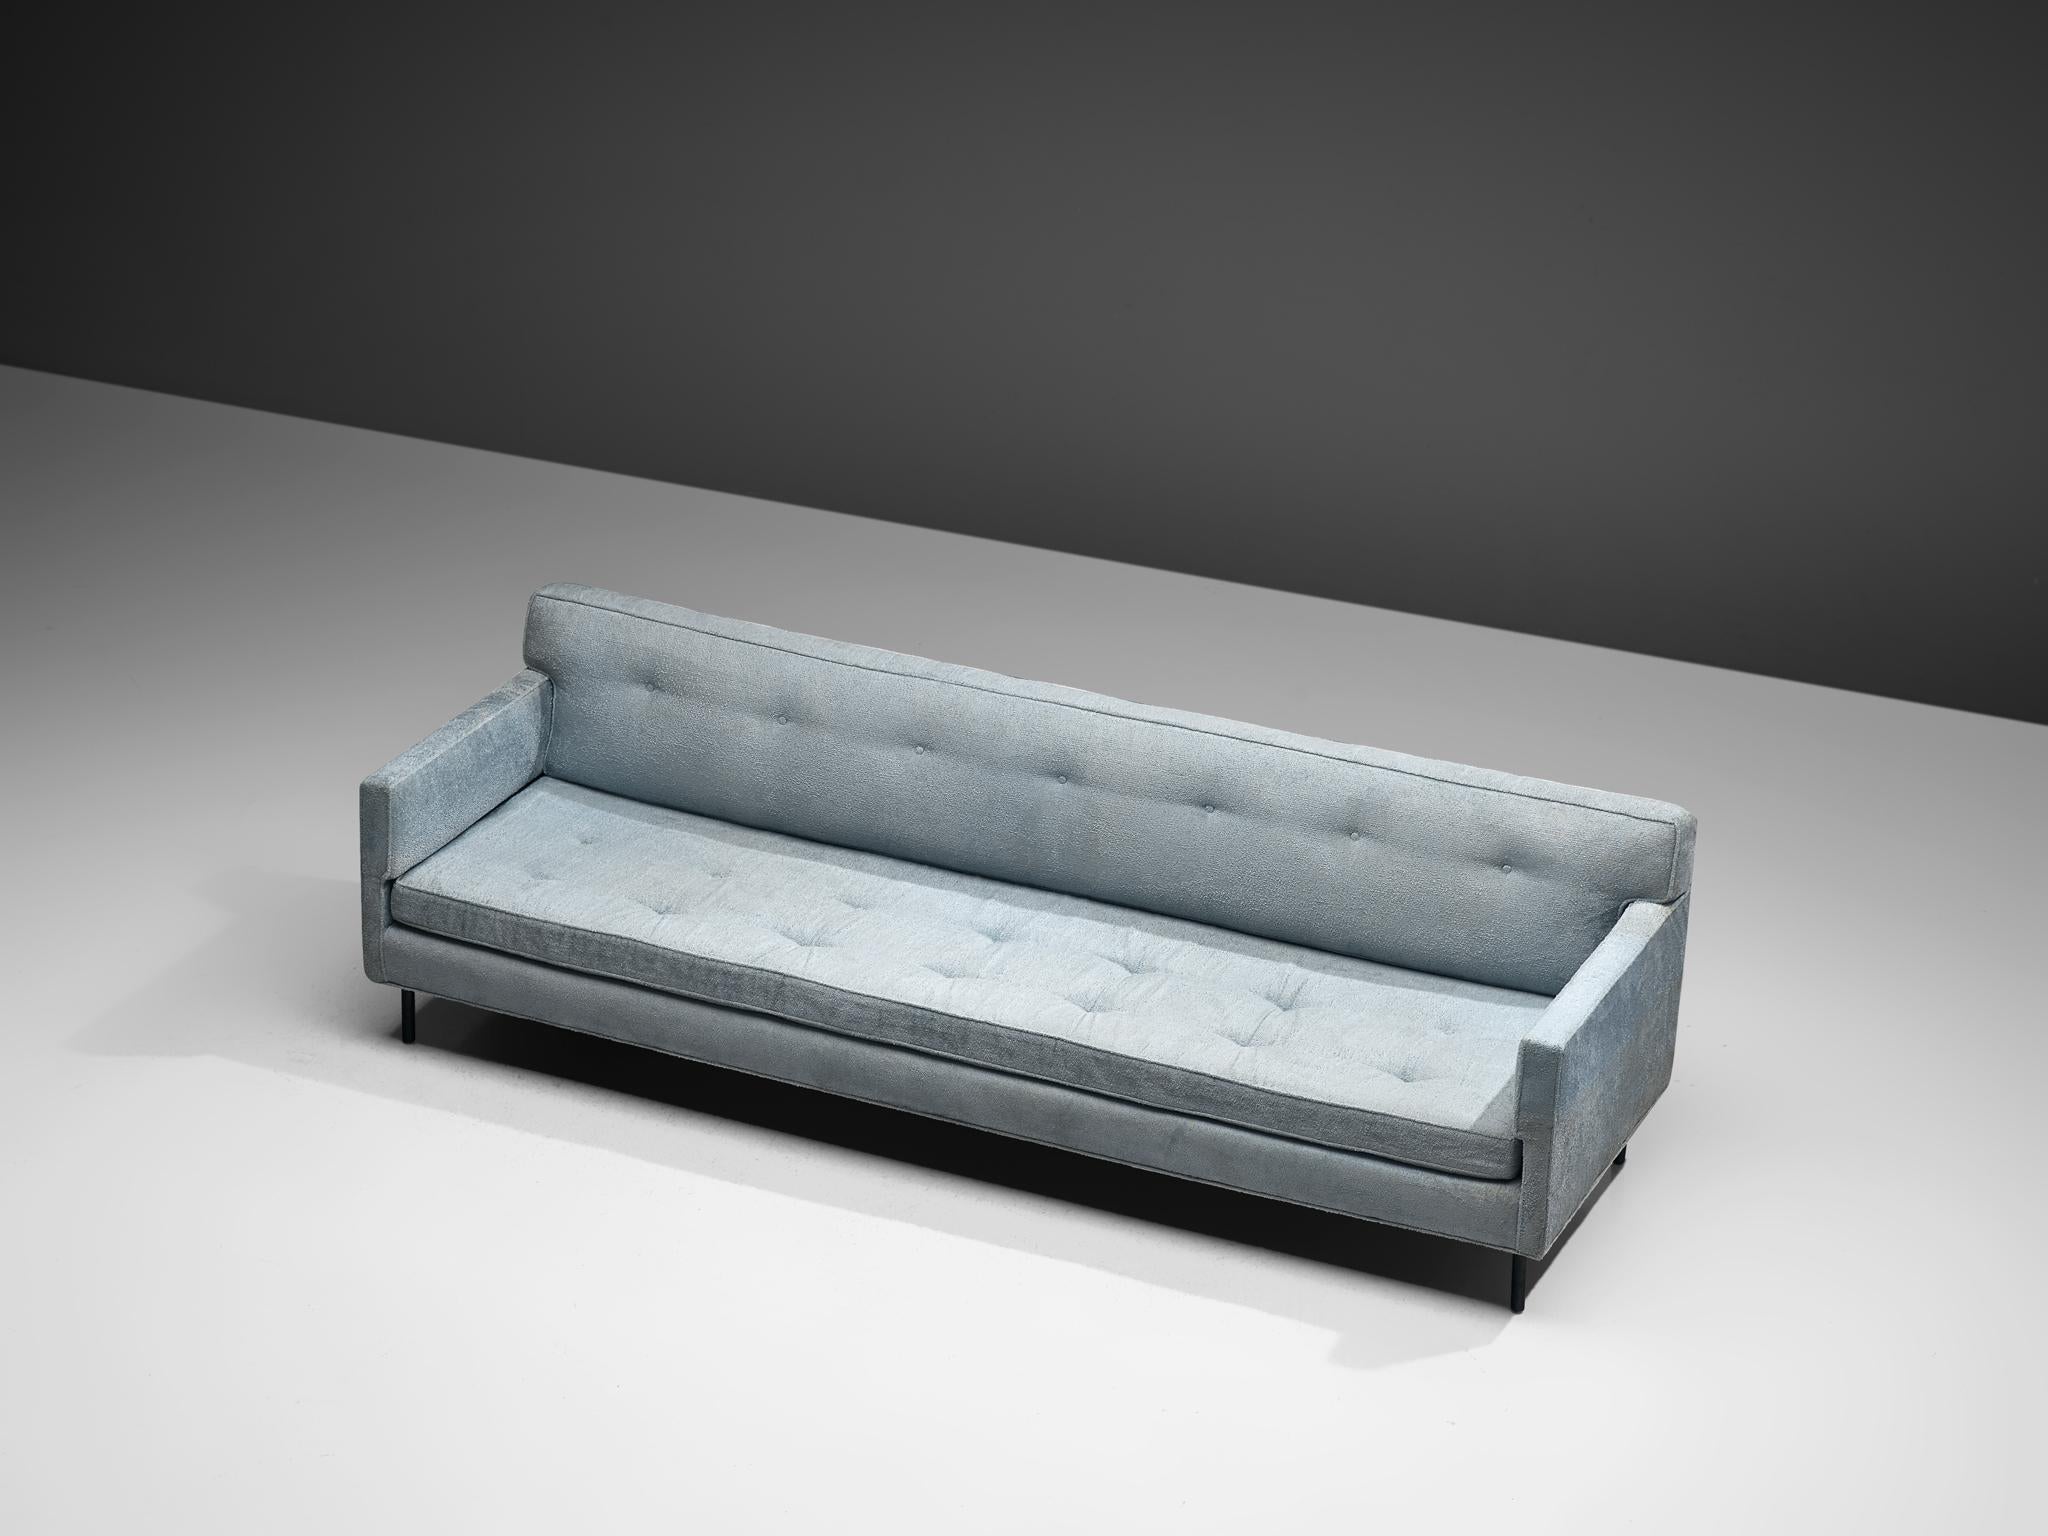 Edward Wormley für Dunbar, Sofa, Modell 5150, Stoff, Metall, Vereinigte Staaten, 1950er Jahre. 

Das Sofa strahlt einen schlichten und eleganten Stil aus, der an die klassischen Designelemente erinnert, die typisch für Edward Wormley sind. Das Sofa